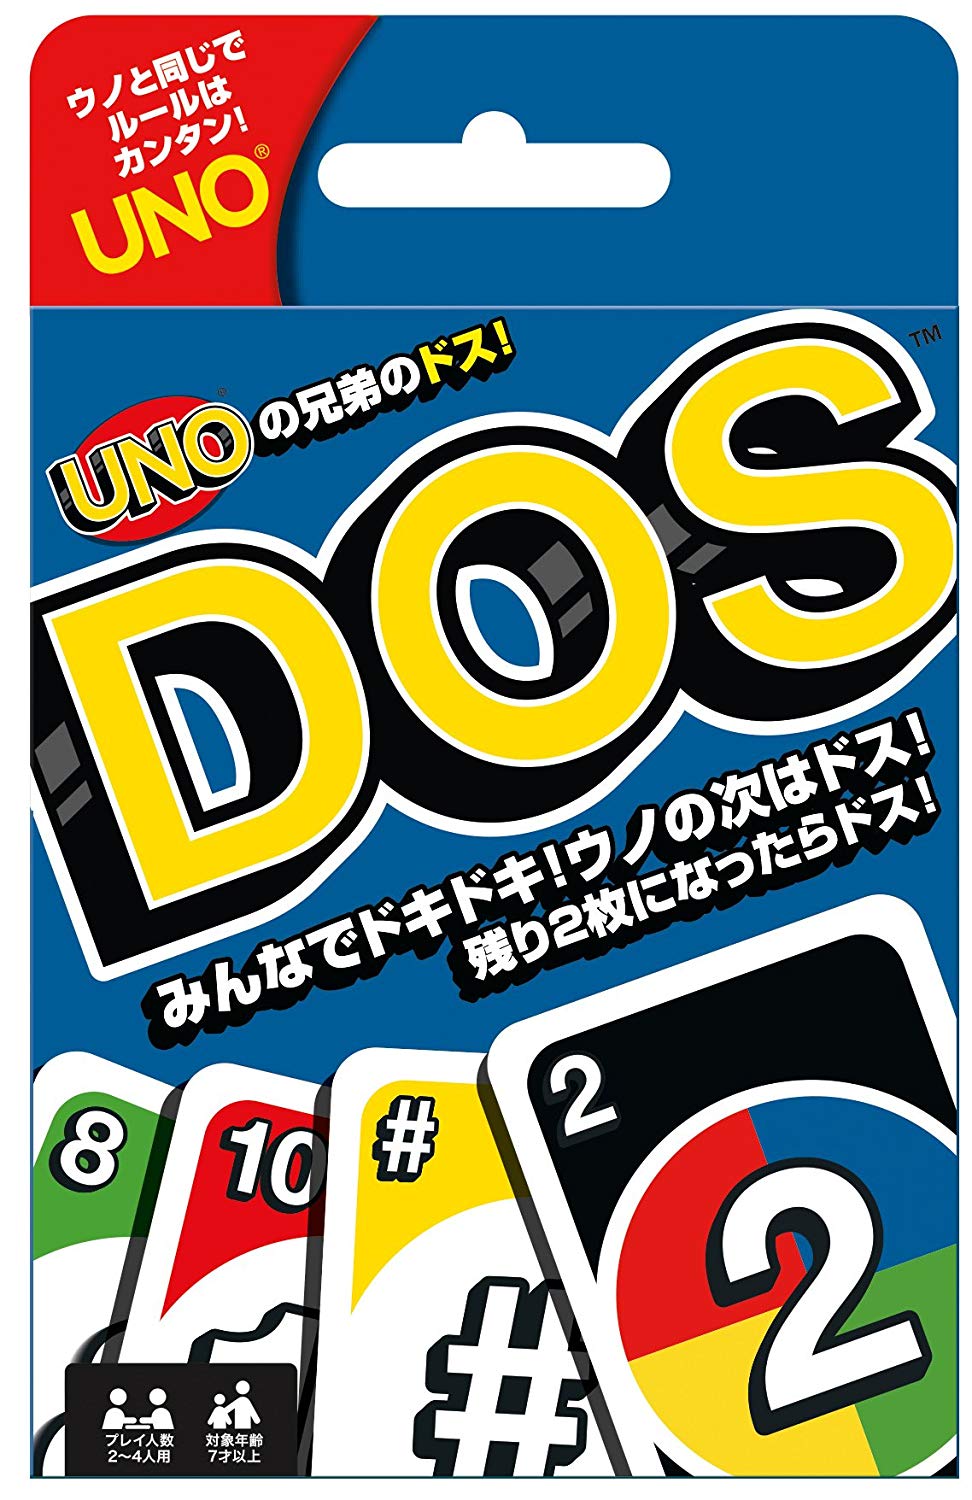 “DOS” -まだ知らない人は見ておきたい、”UNO”の兄弟版、新しいカードゲームのルールを超シンプルに解説します。